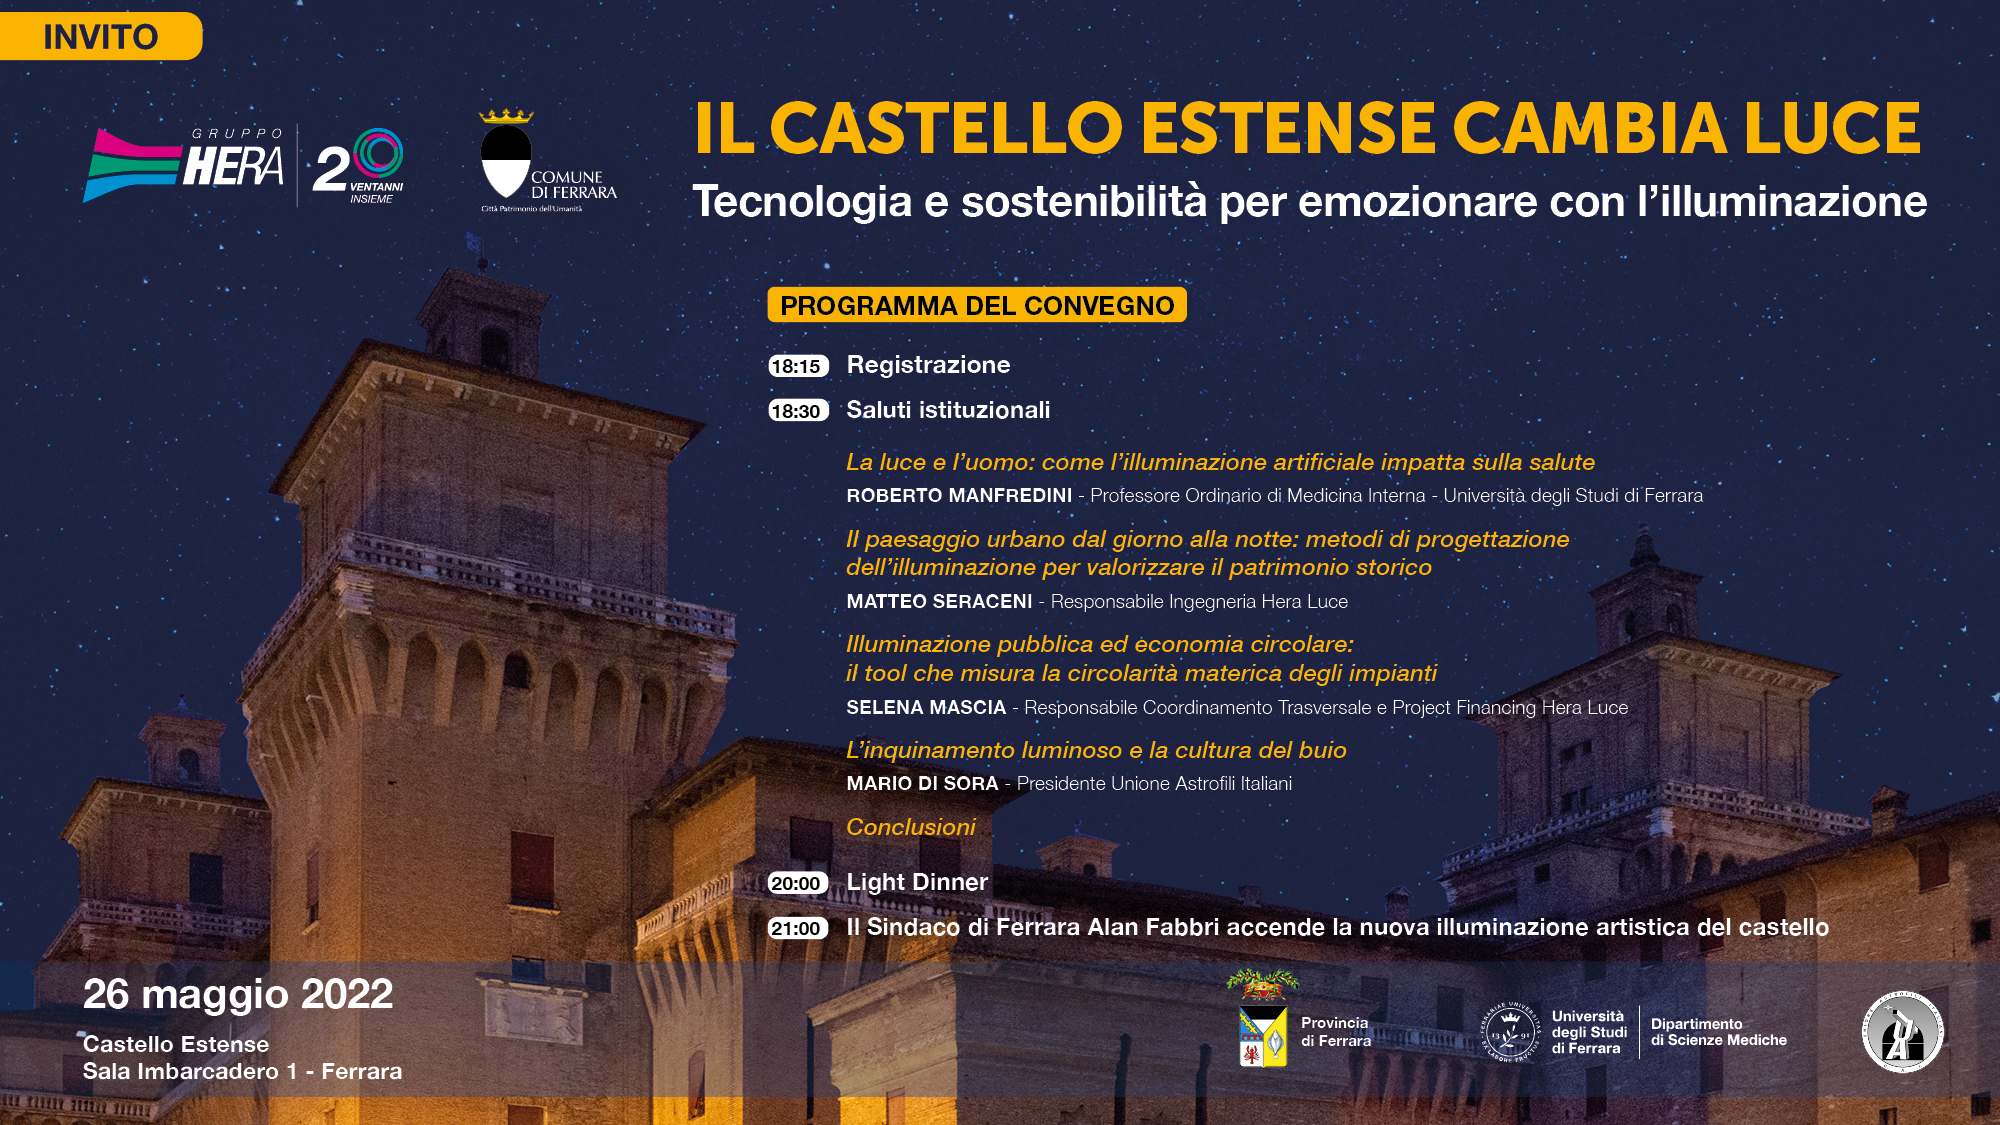 INVITO_Il Castello Estense cambia luce_26052022.jpg